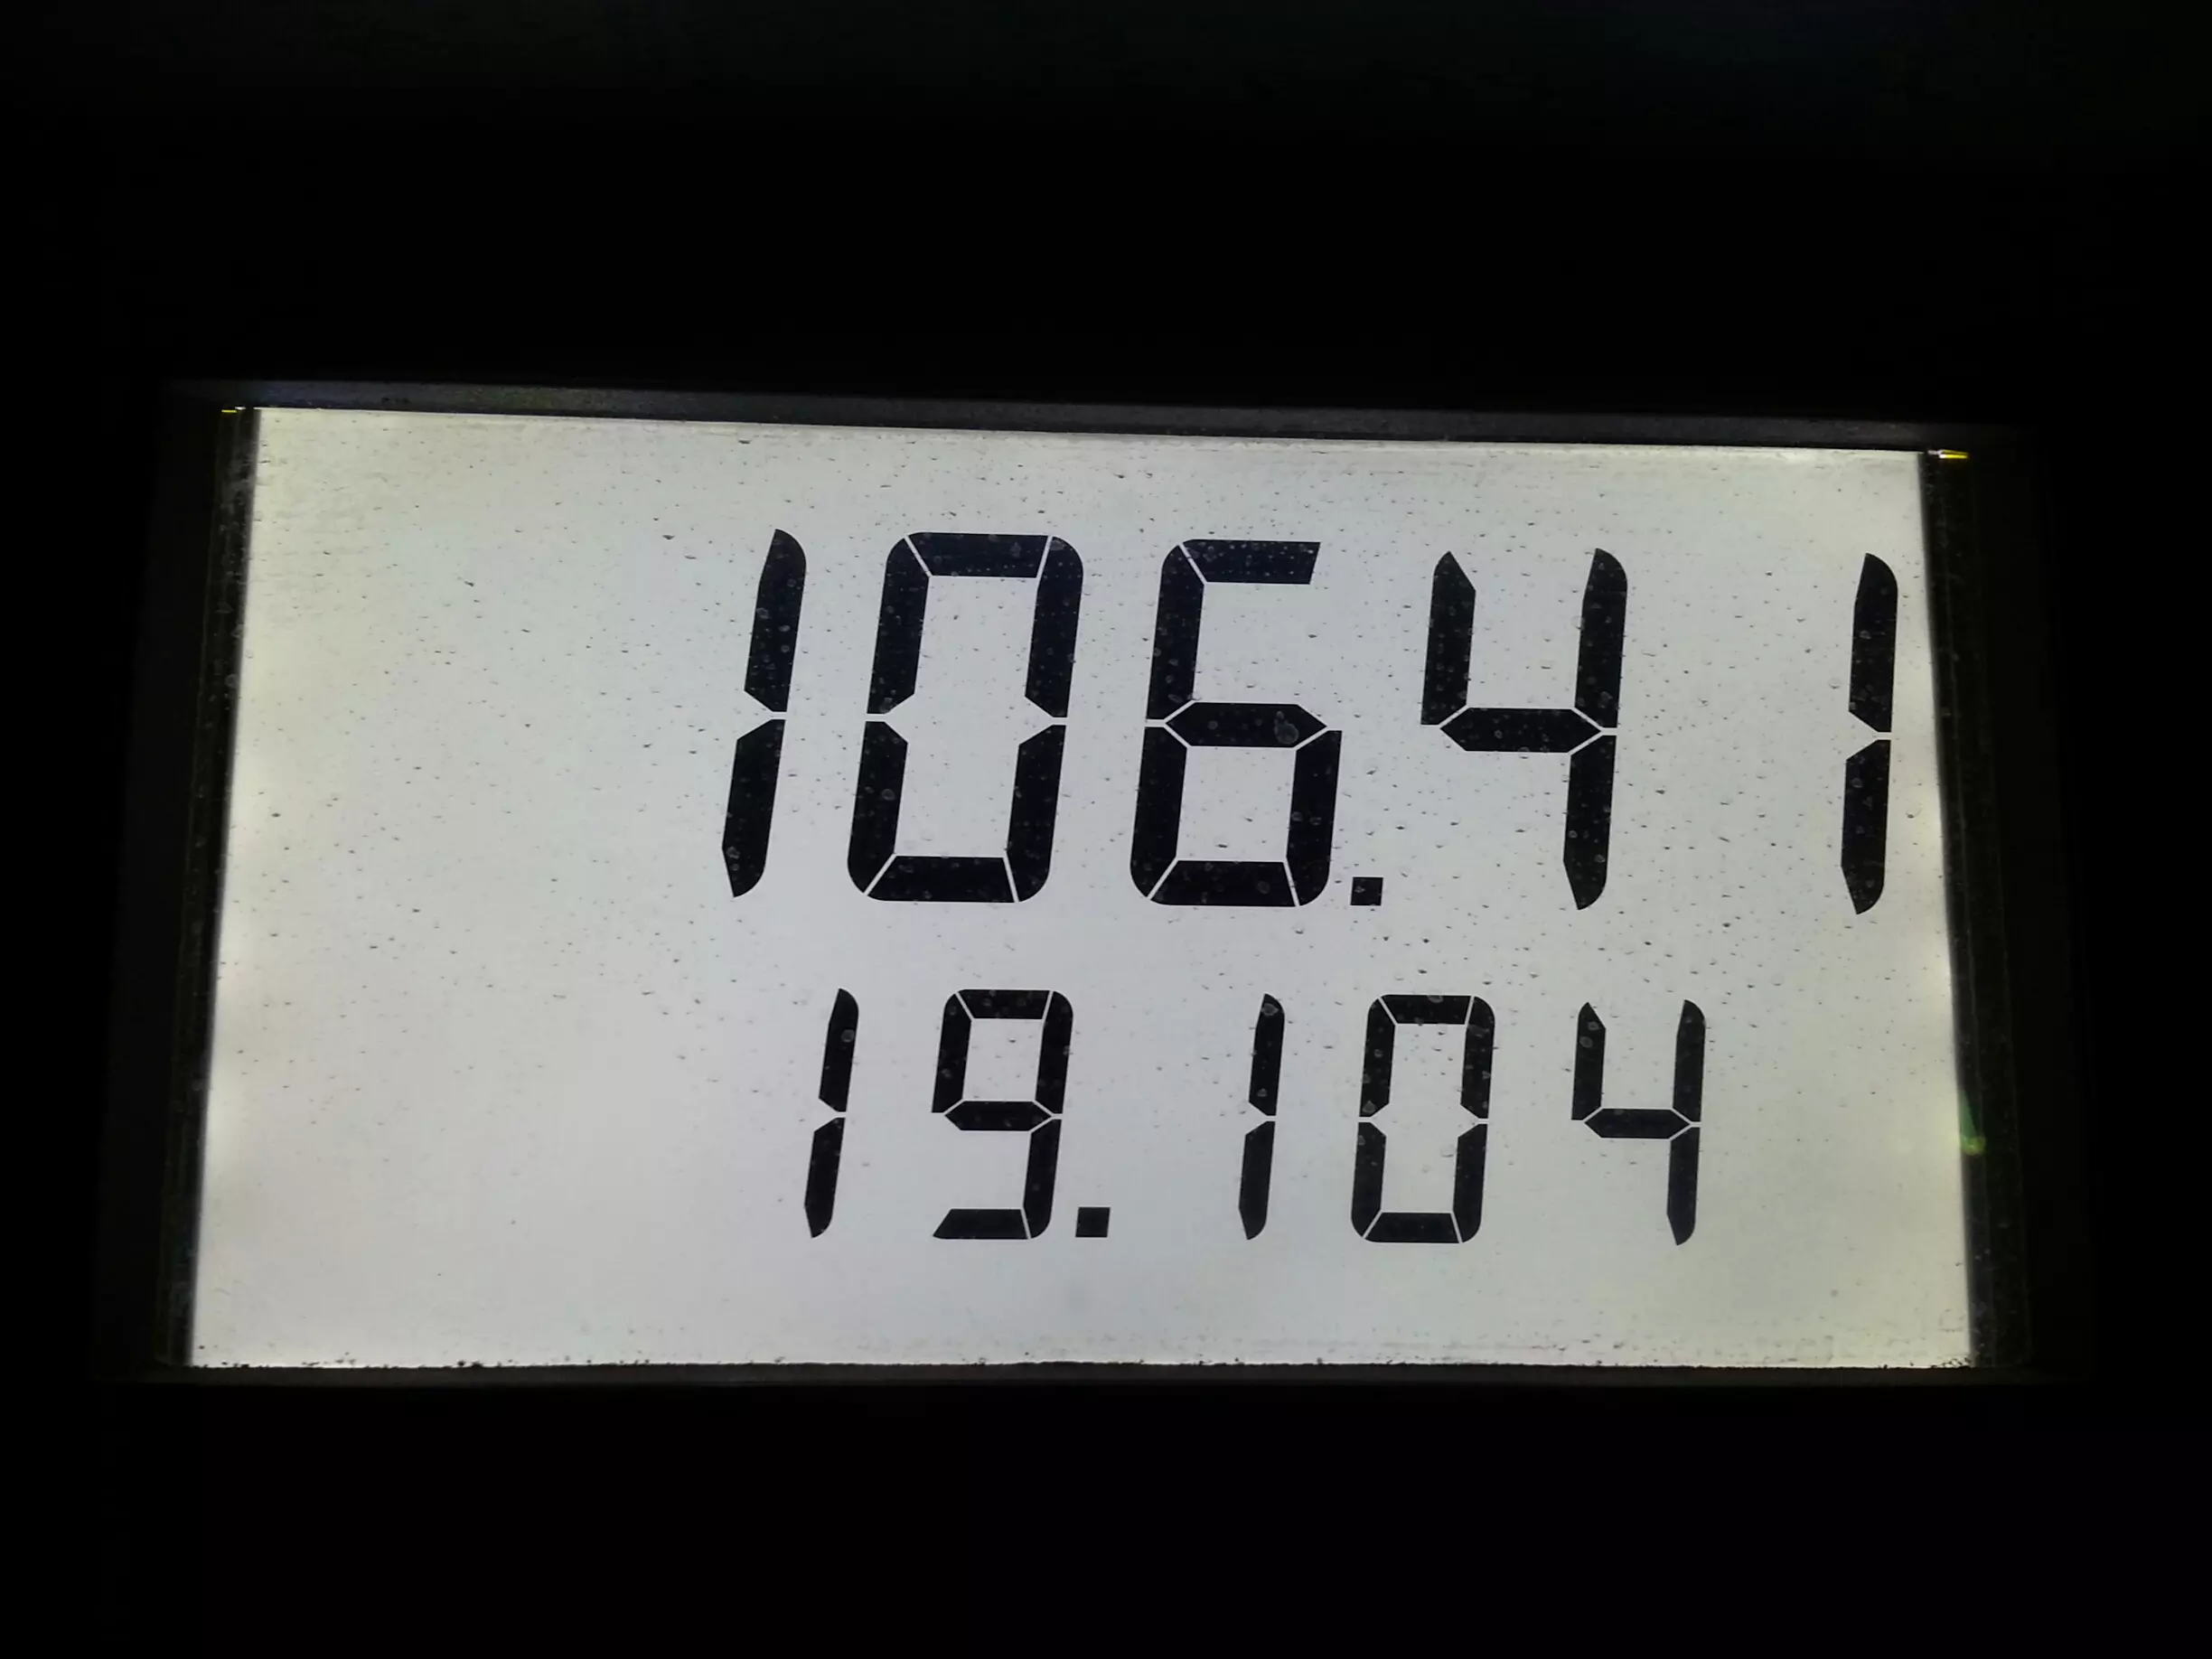 19 ליטרים של דלק ועלות של 106 שקל באילת או 125 שקל עם מע"מ